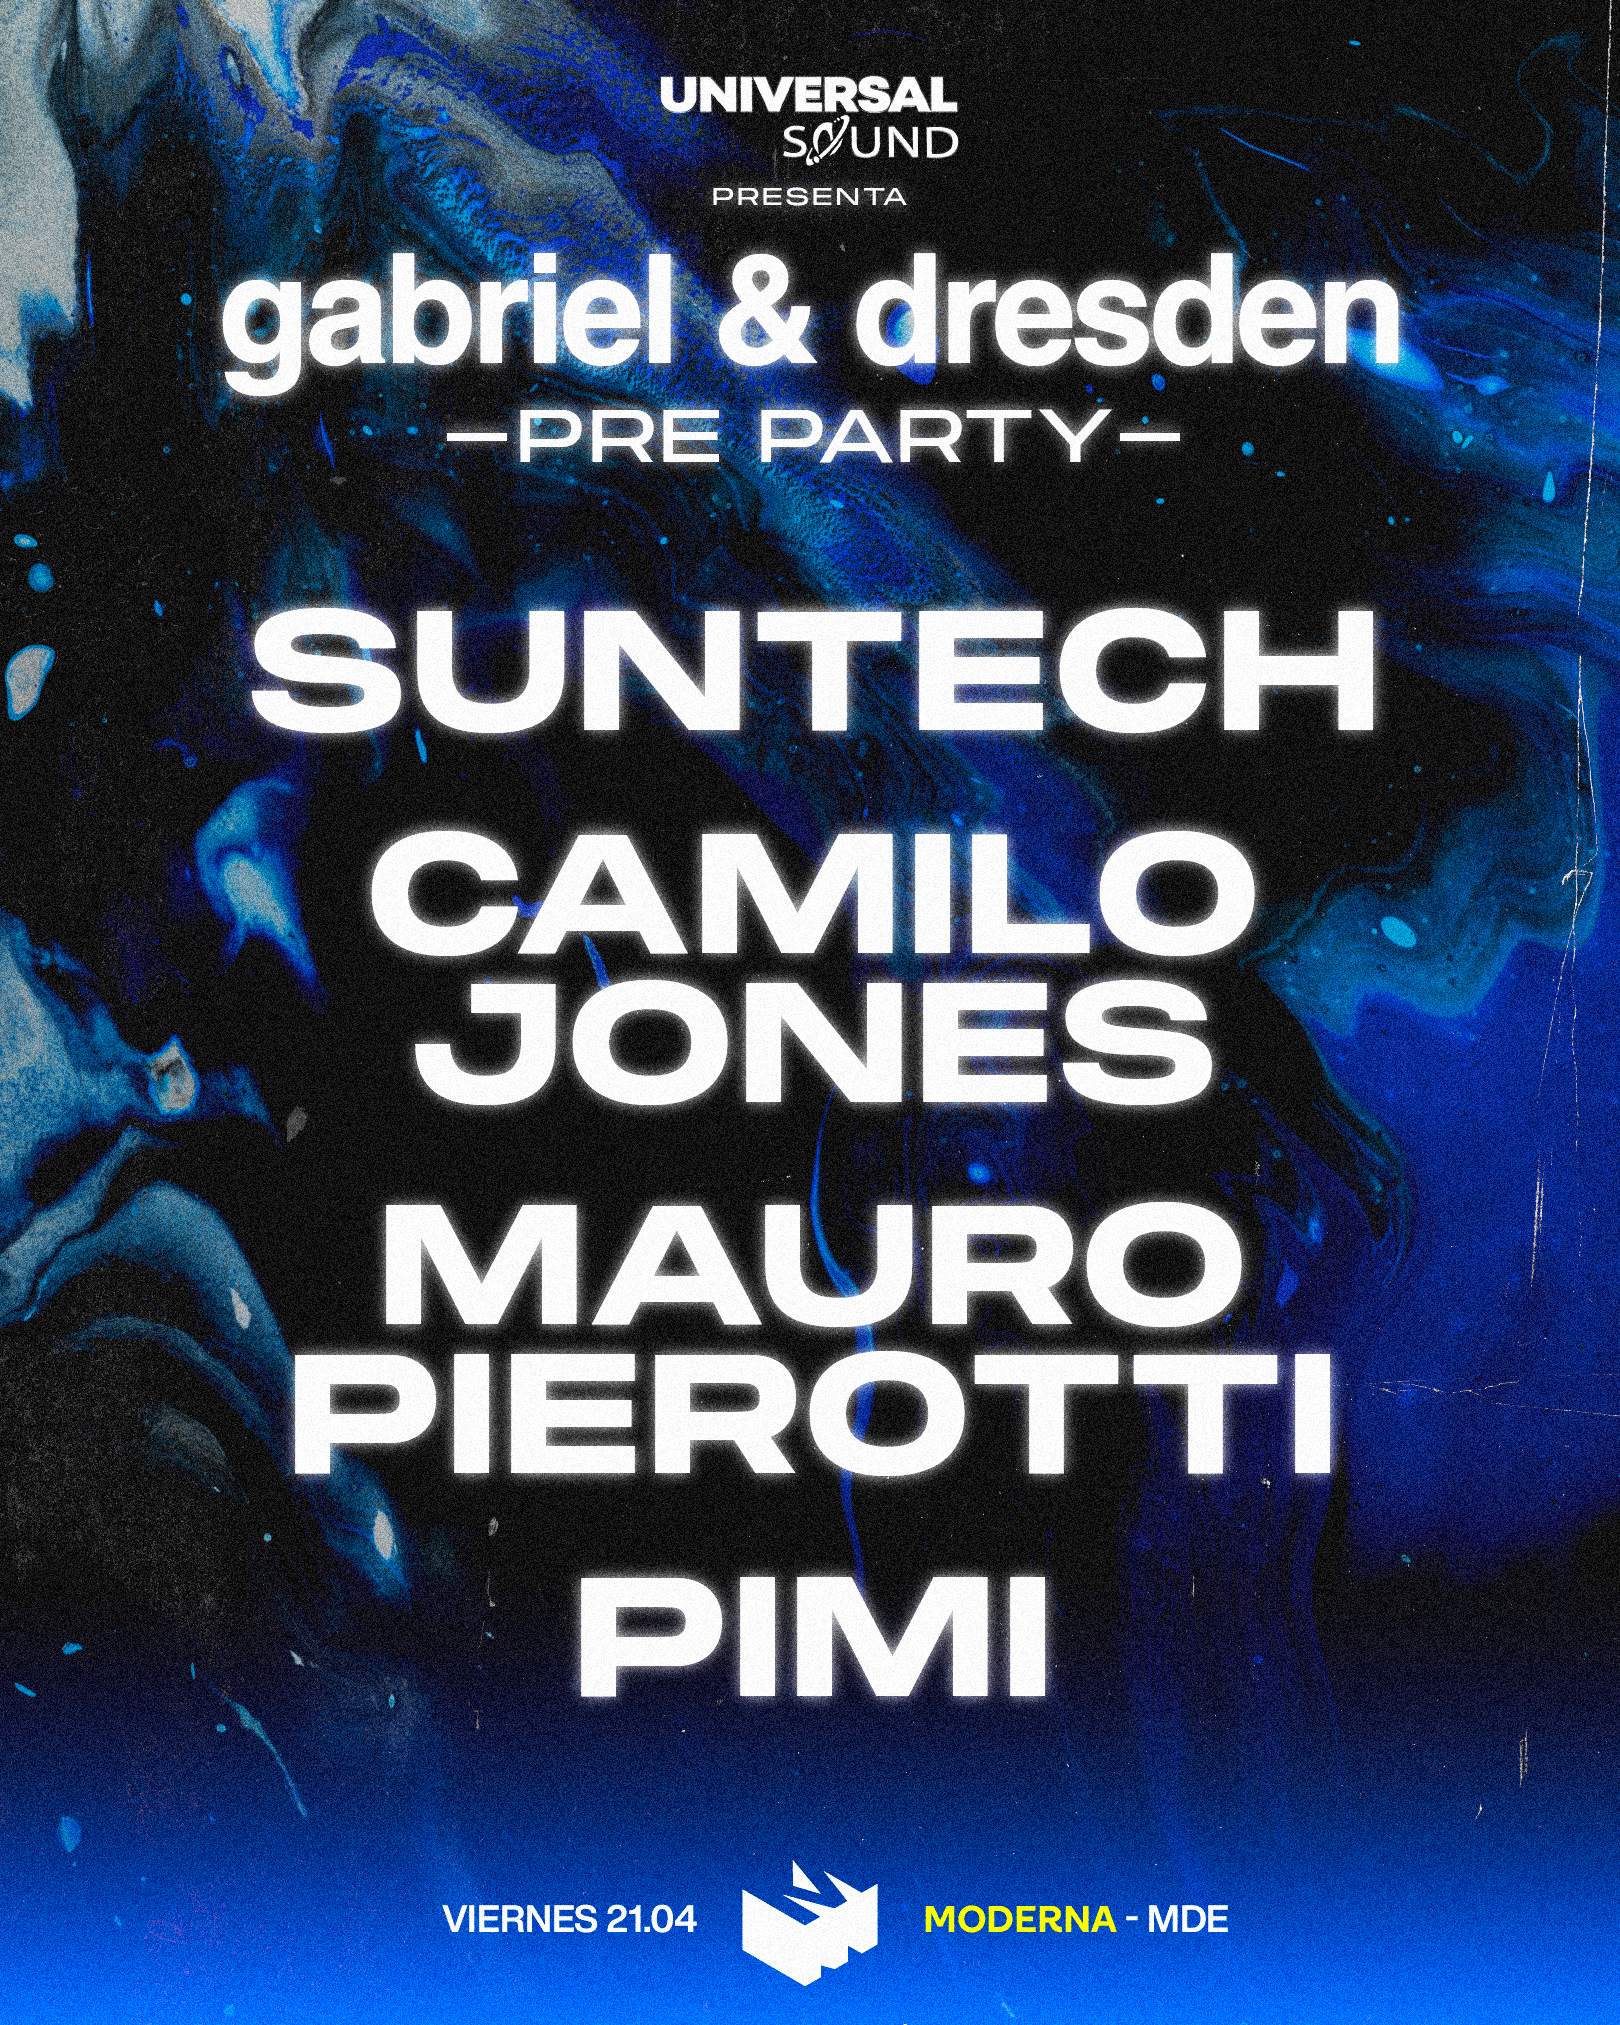 Universal Sound Pres. Gabriel & Dresden Pre-Party - Página frontal